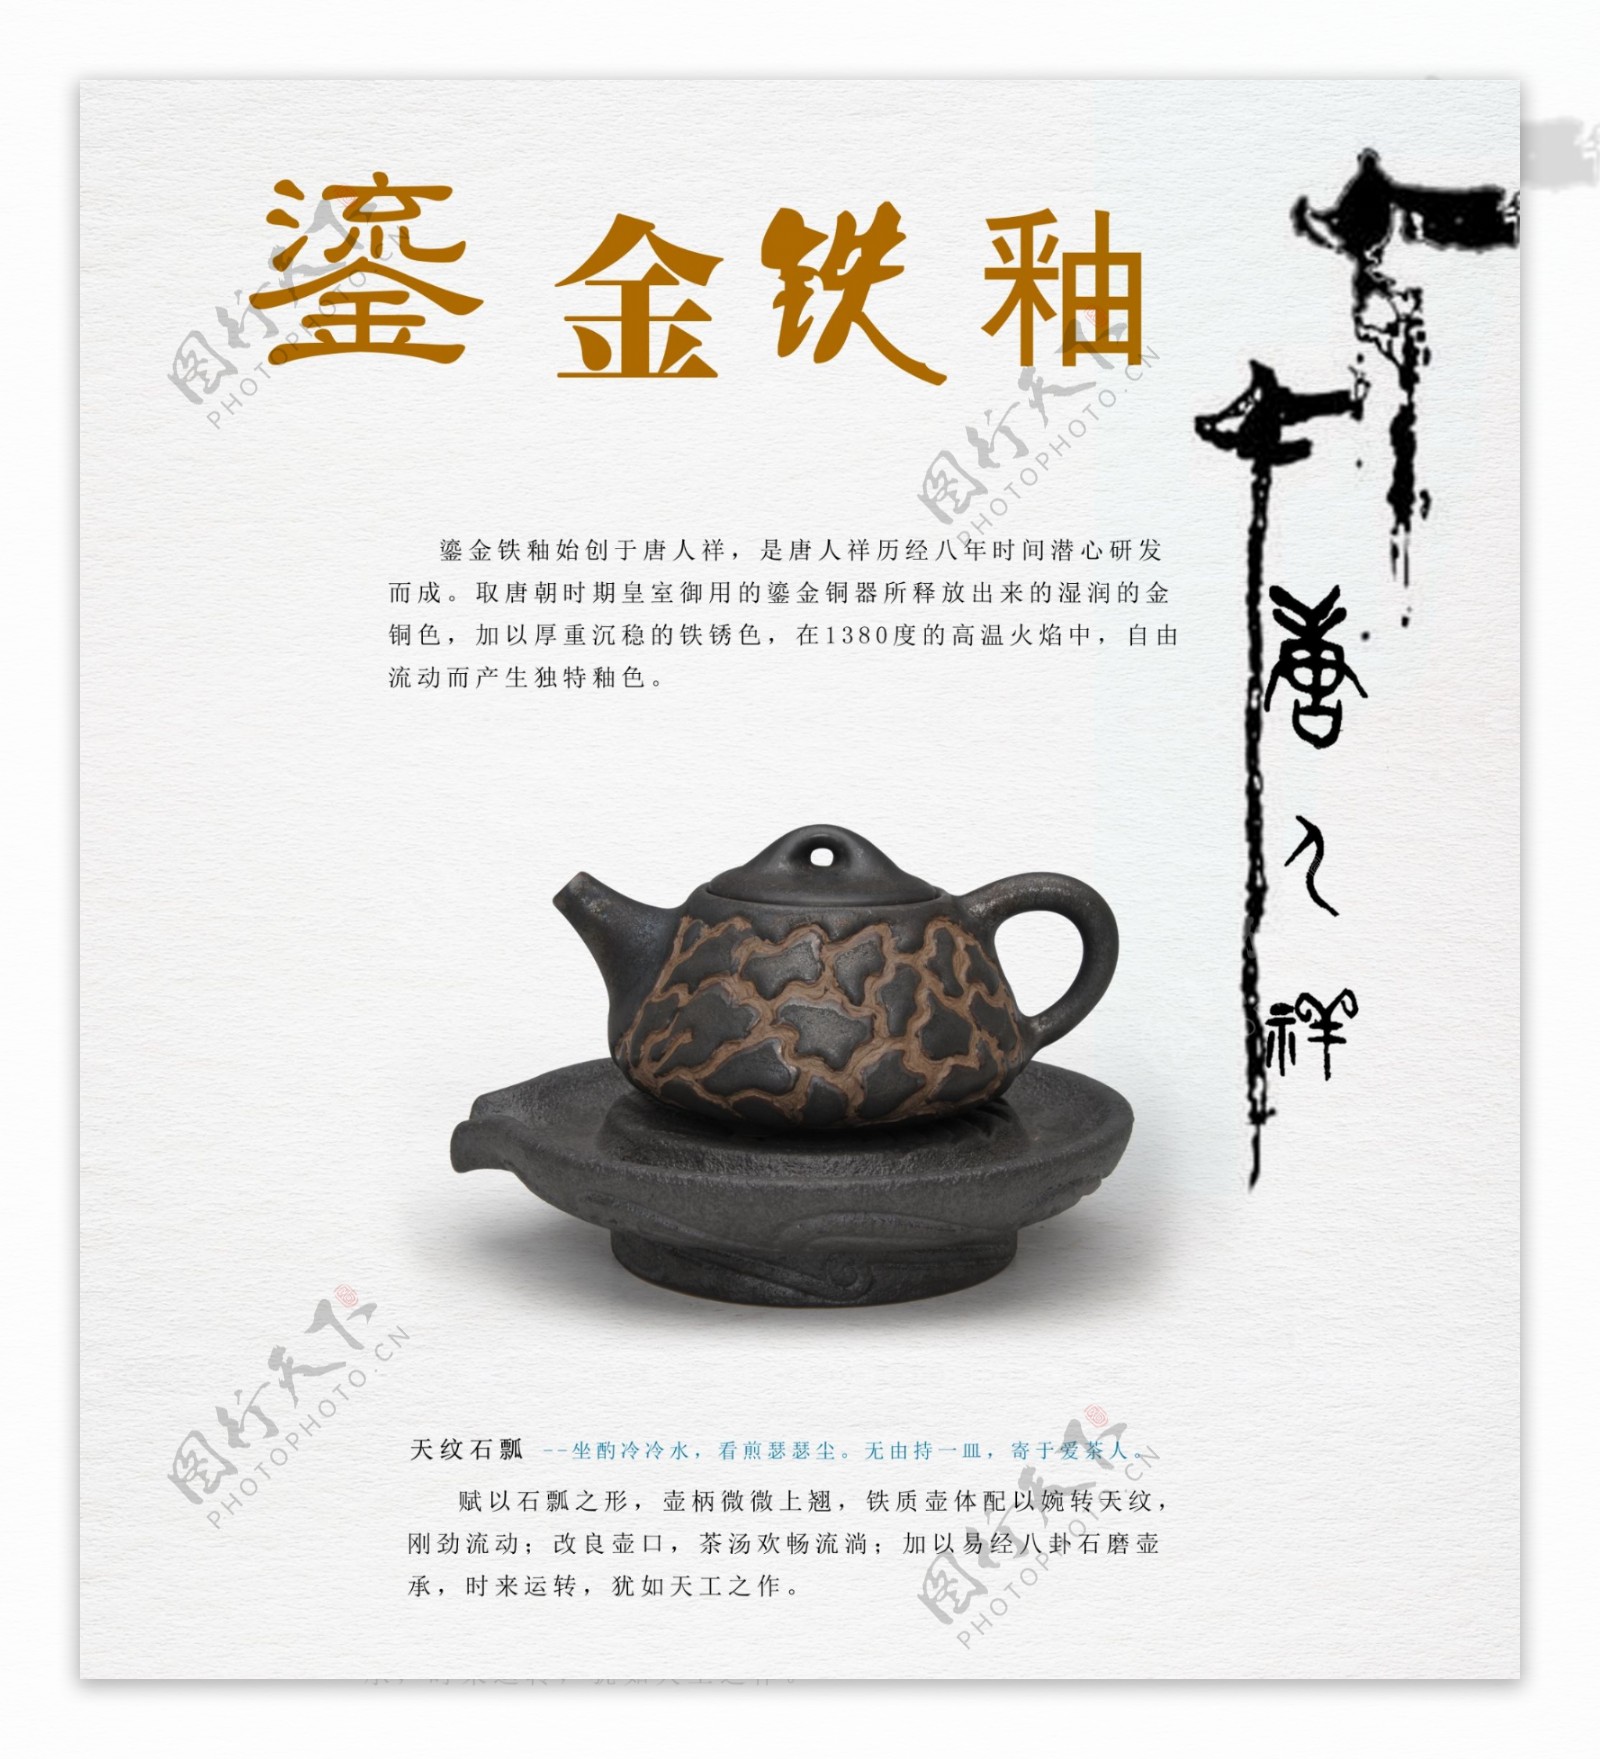 鎏金茶具文化海报PSD素材